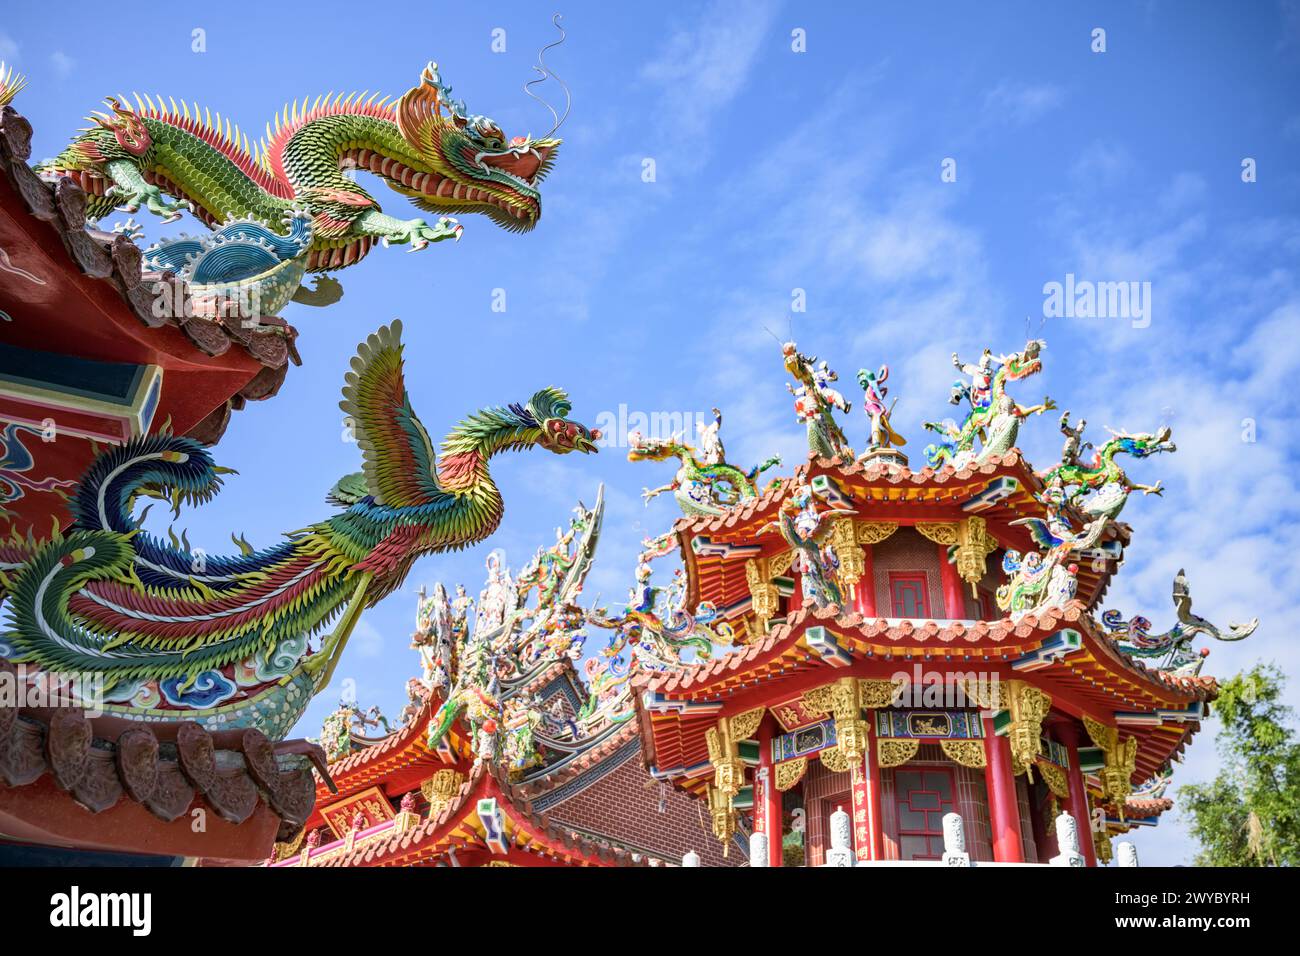 Sculptures de dragon colorées et complexes ornant le toit d'un temple traditionnel taïwanais contre un ciel clair Banque D'Images